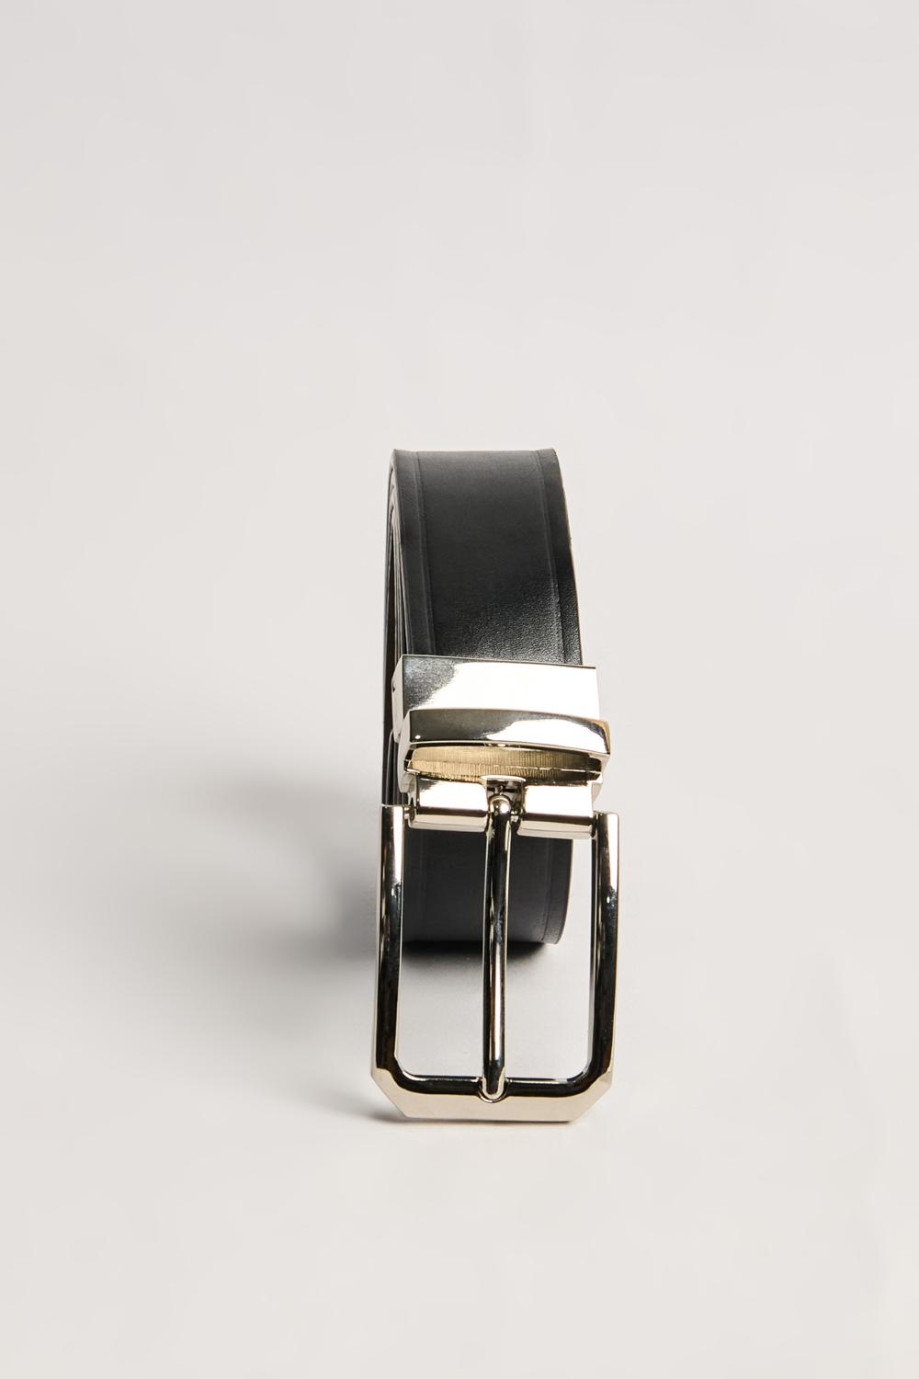 Cinturón reversible negro con hebilla plateada cuadrada